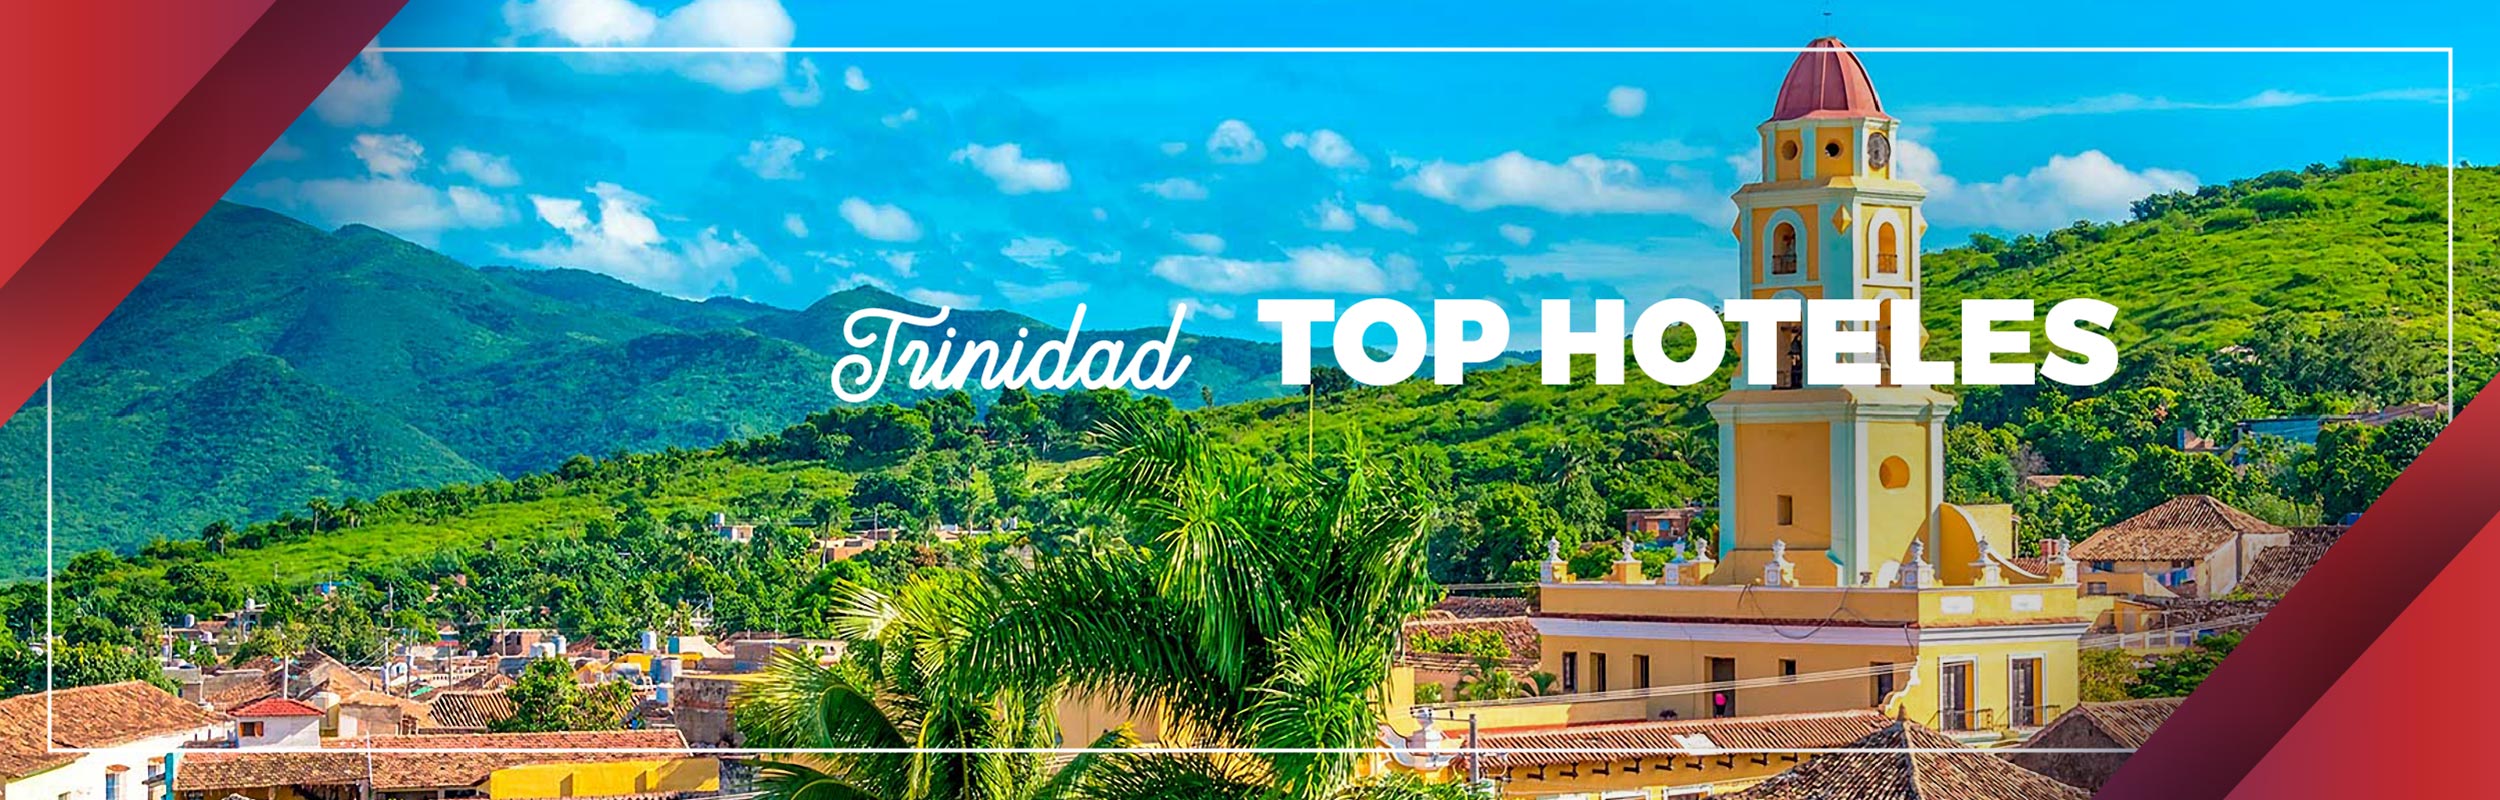 Guama top hoteles trinidad cuba%40x2